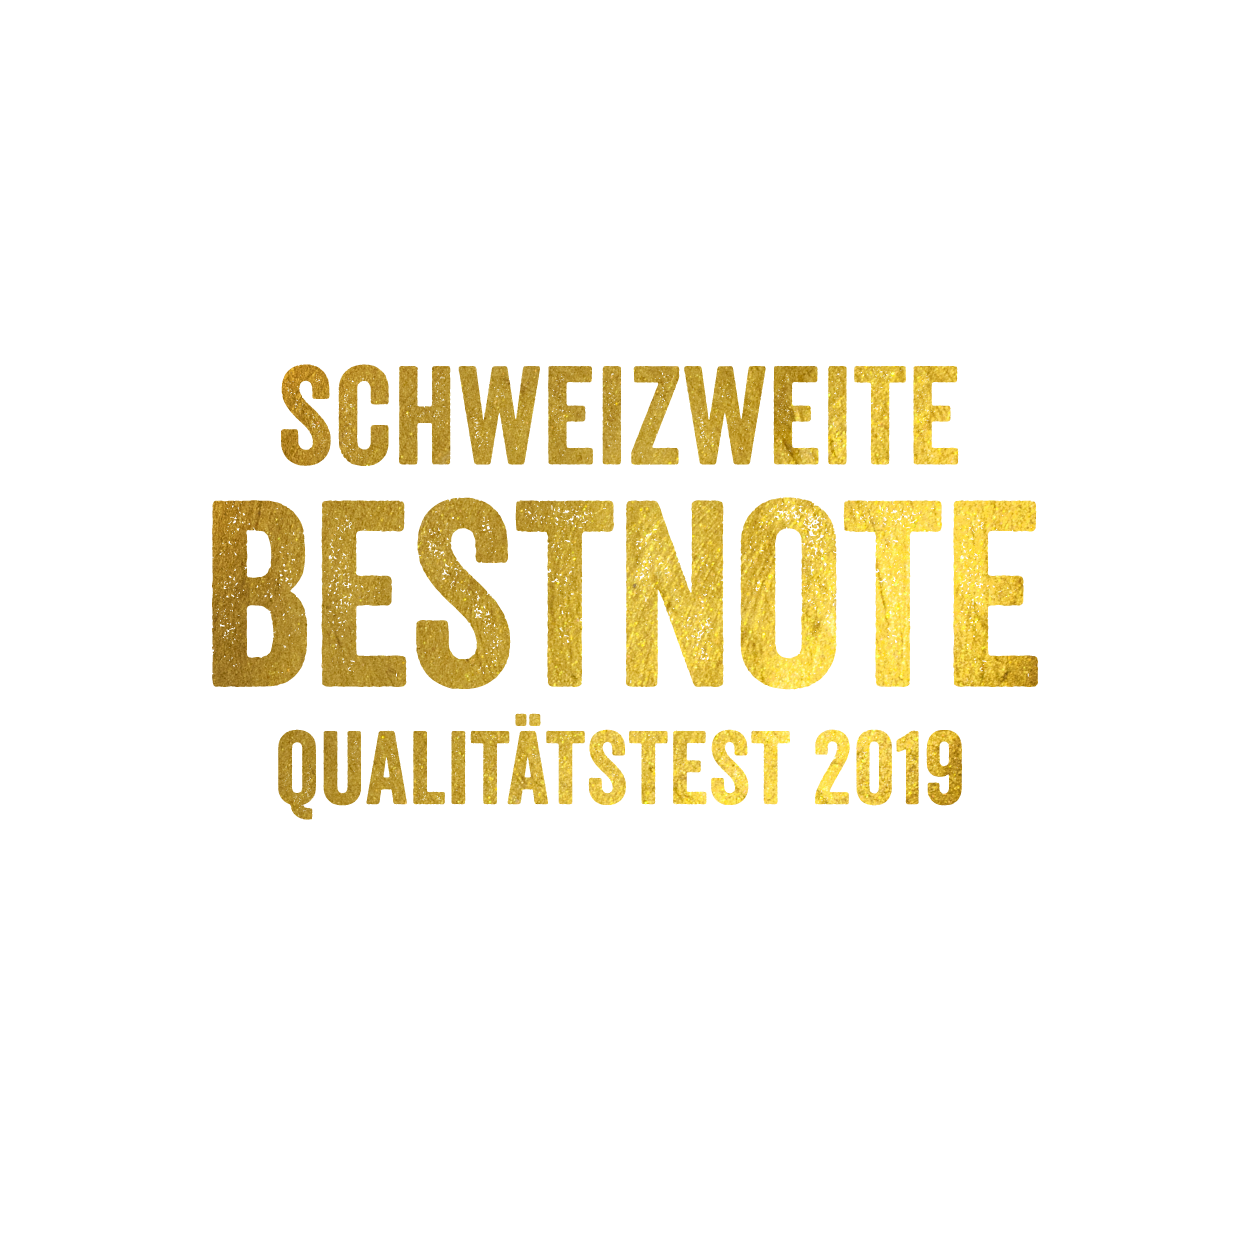 Schweizweite Bestnote Qualitätstest 2019